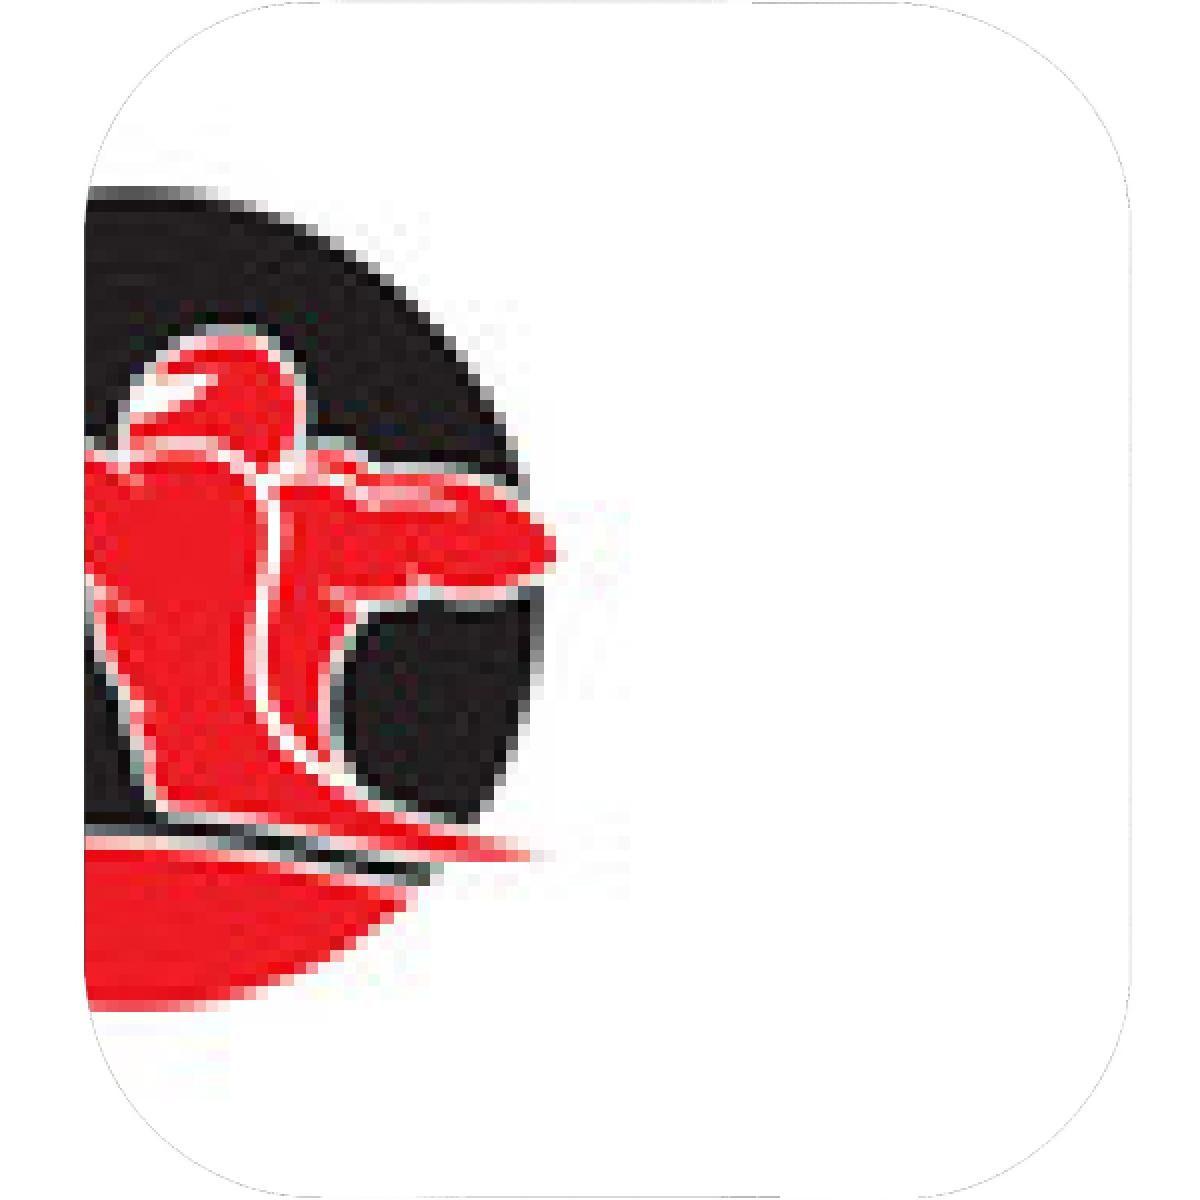 Red Archer Logo - Designs